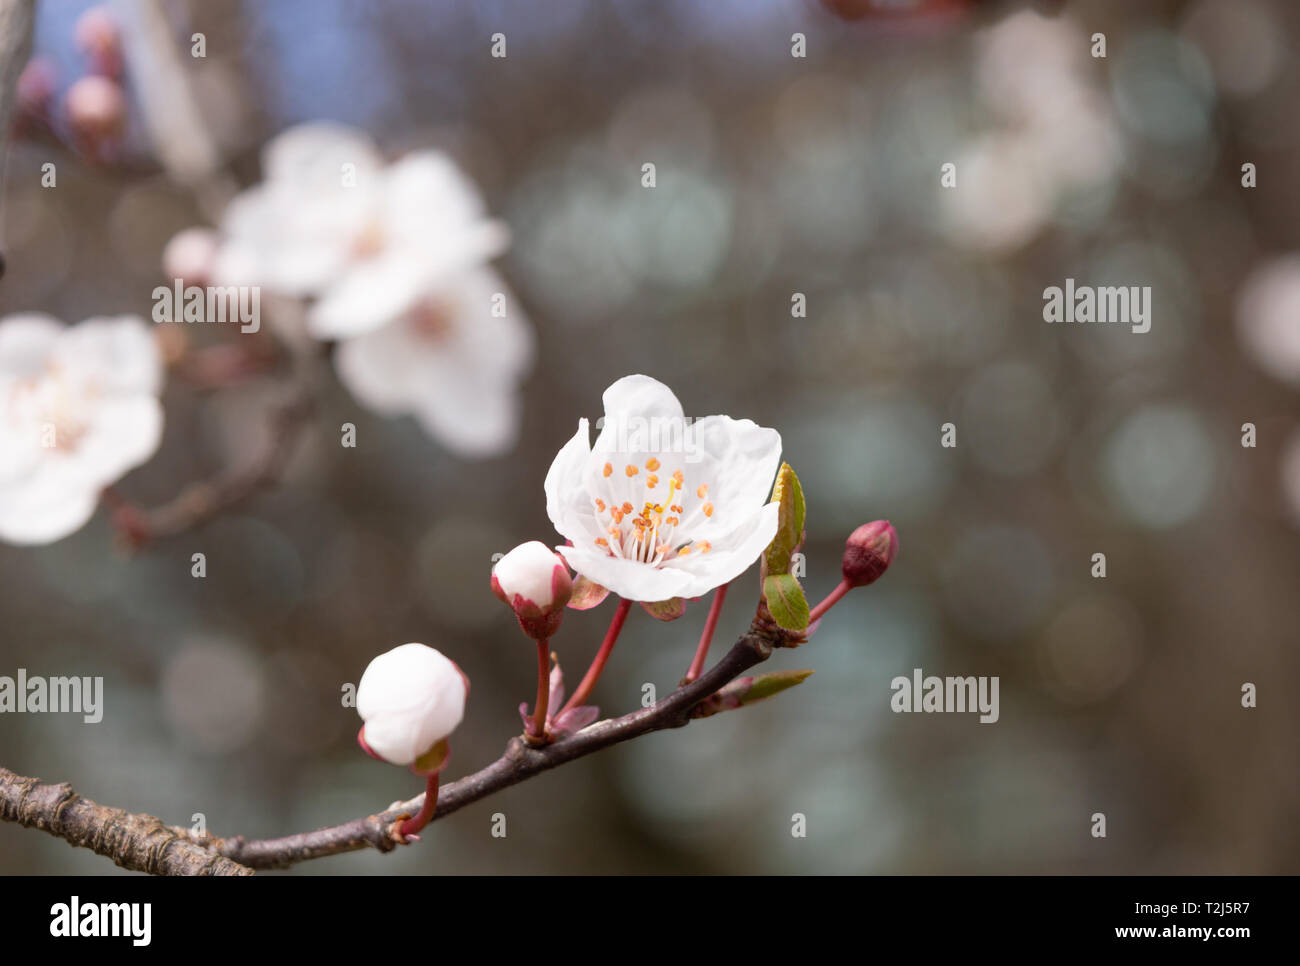 Aprikosen Baum Blume mit Knospen blühen im Frühling. Unfocused Hintergrund. Stockfoto